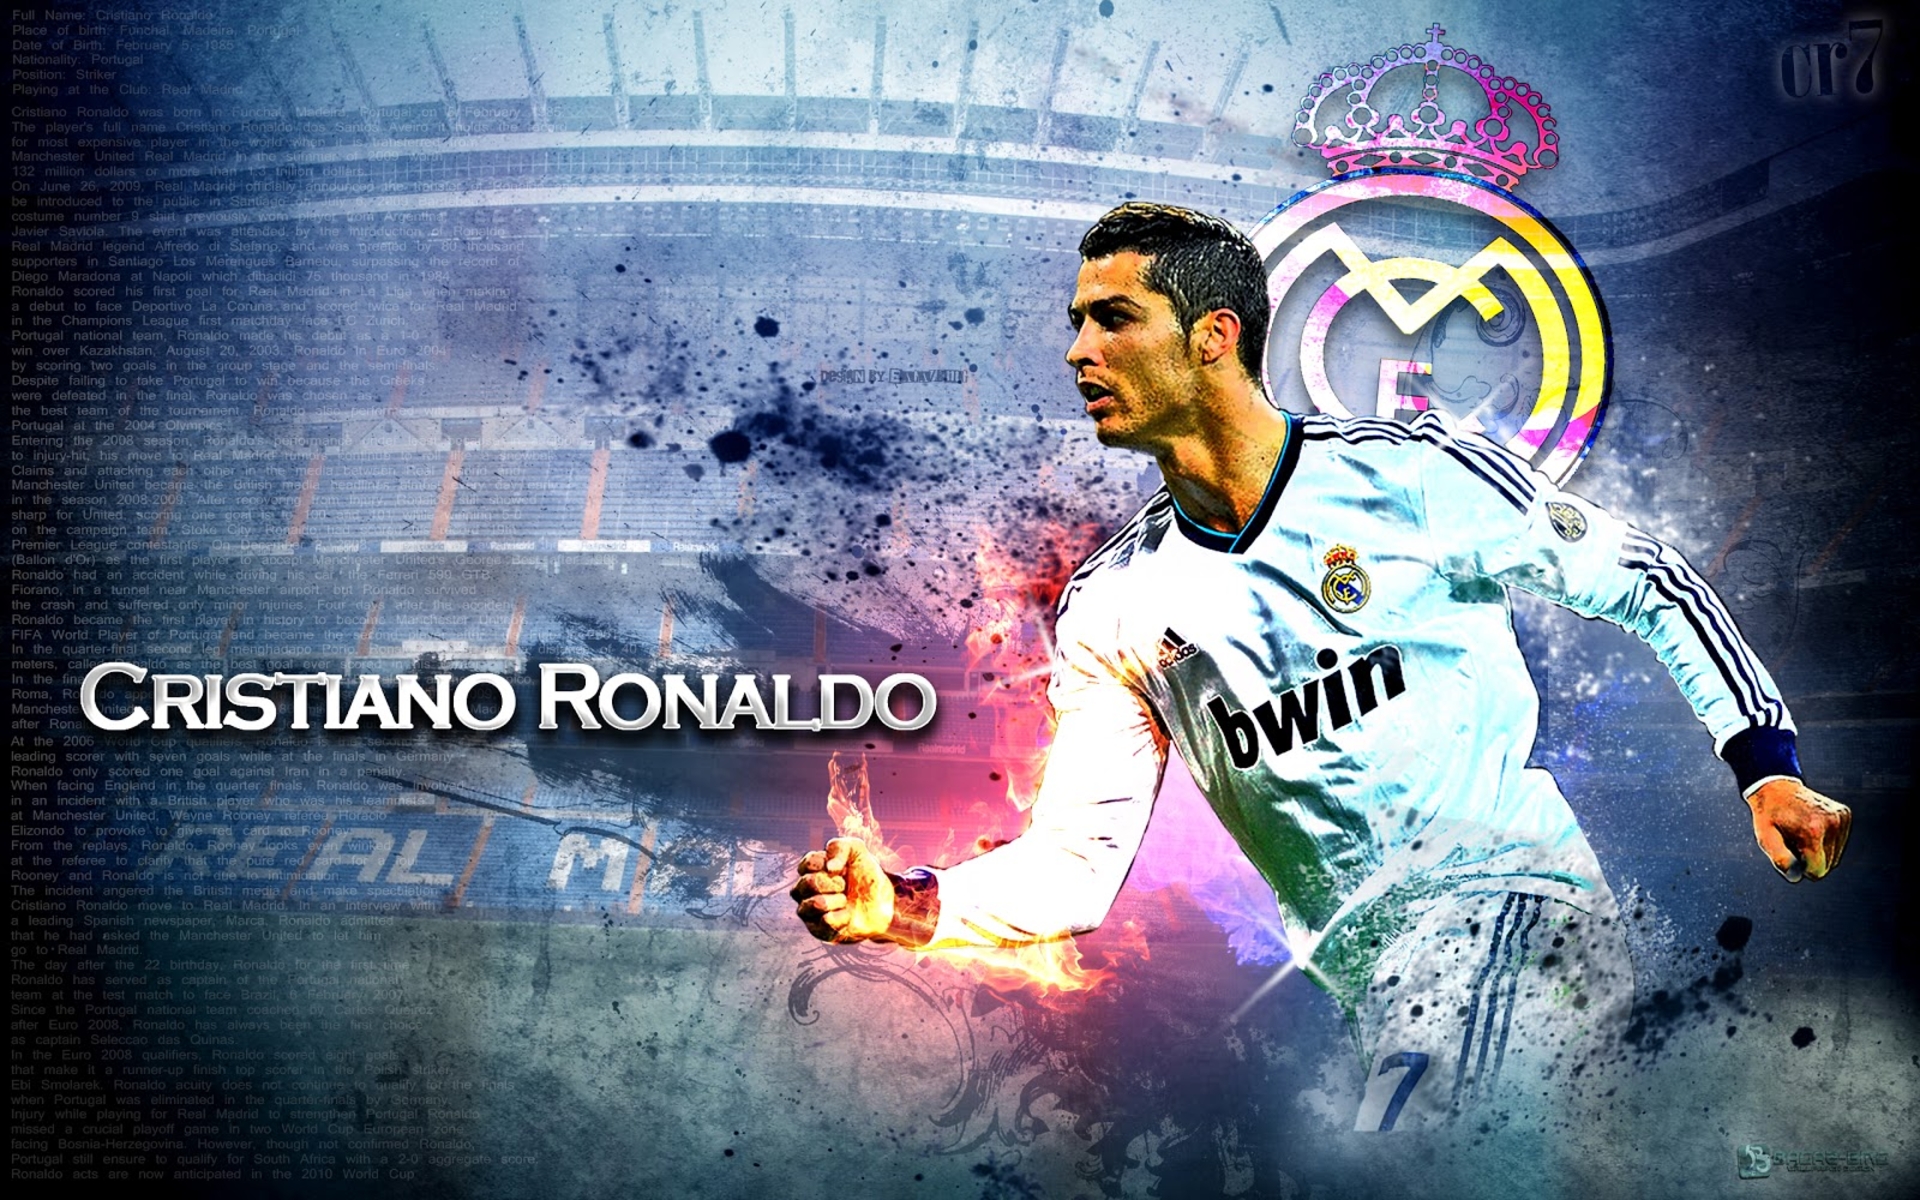 Cristiano Ronaldo Picture Gallery